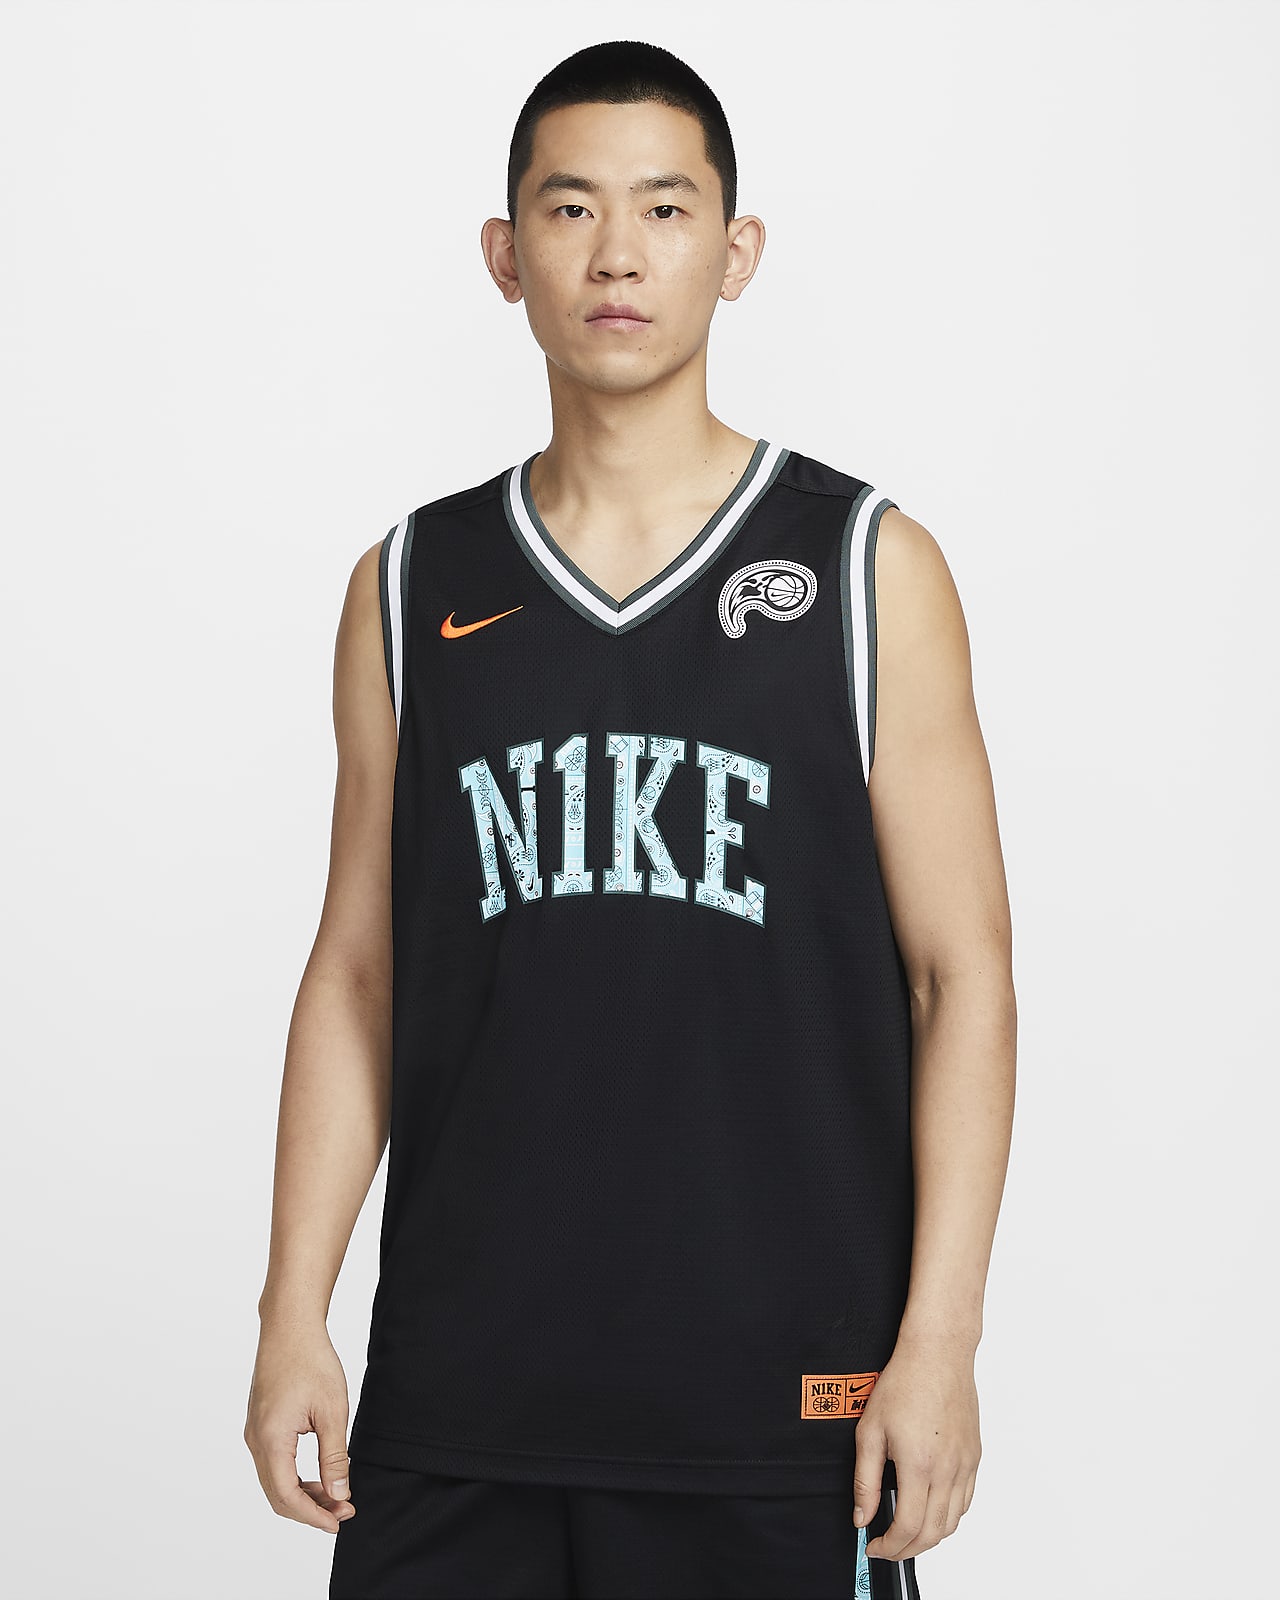 Nike DNA "CHBL" 耐高篮球系列 Dri-FIT 男子速干篮球球衣